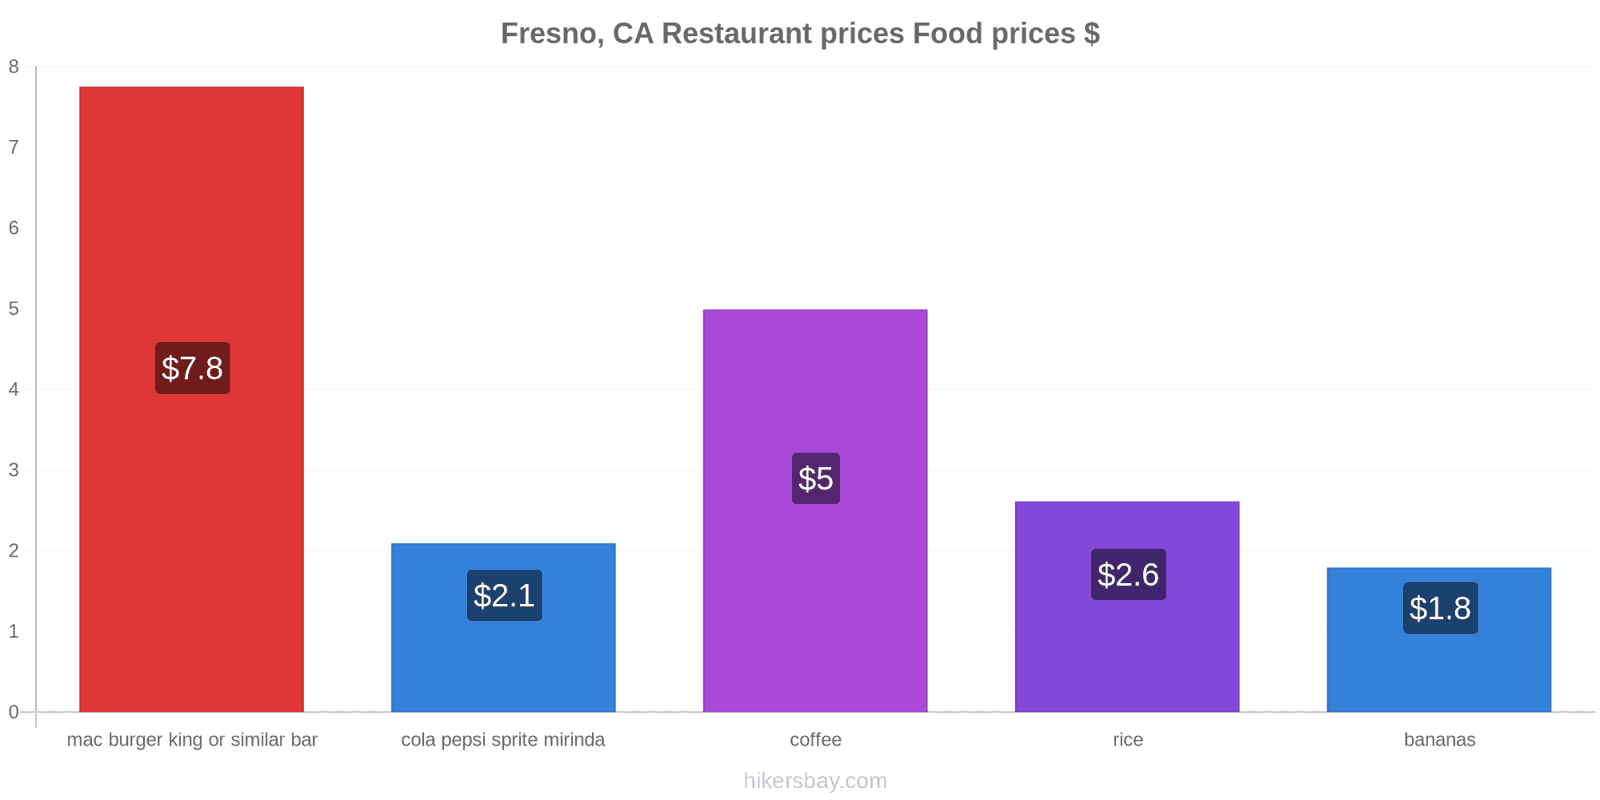 Fresno, CA price changes hikersbay.com